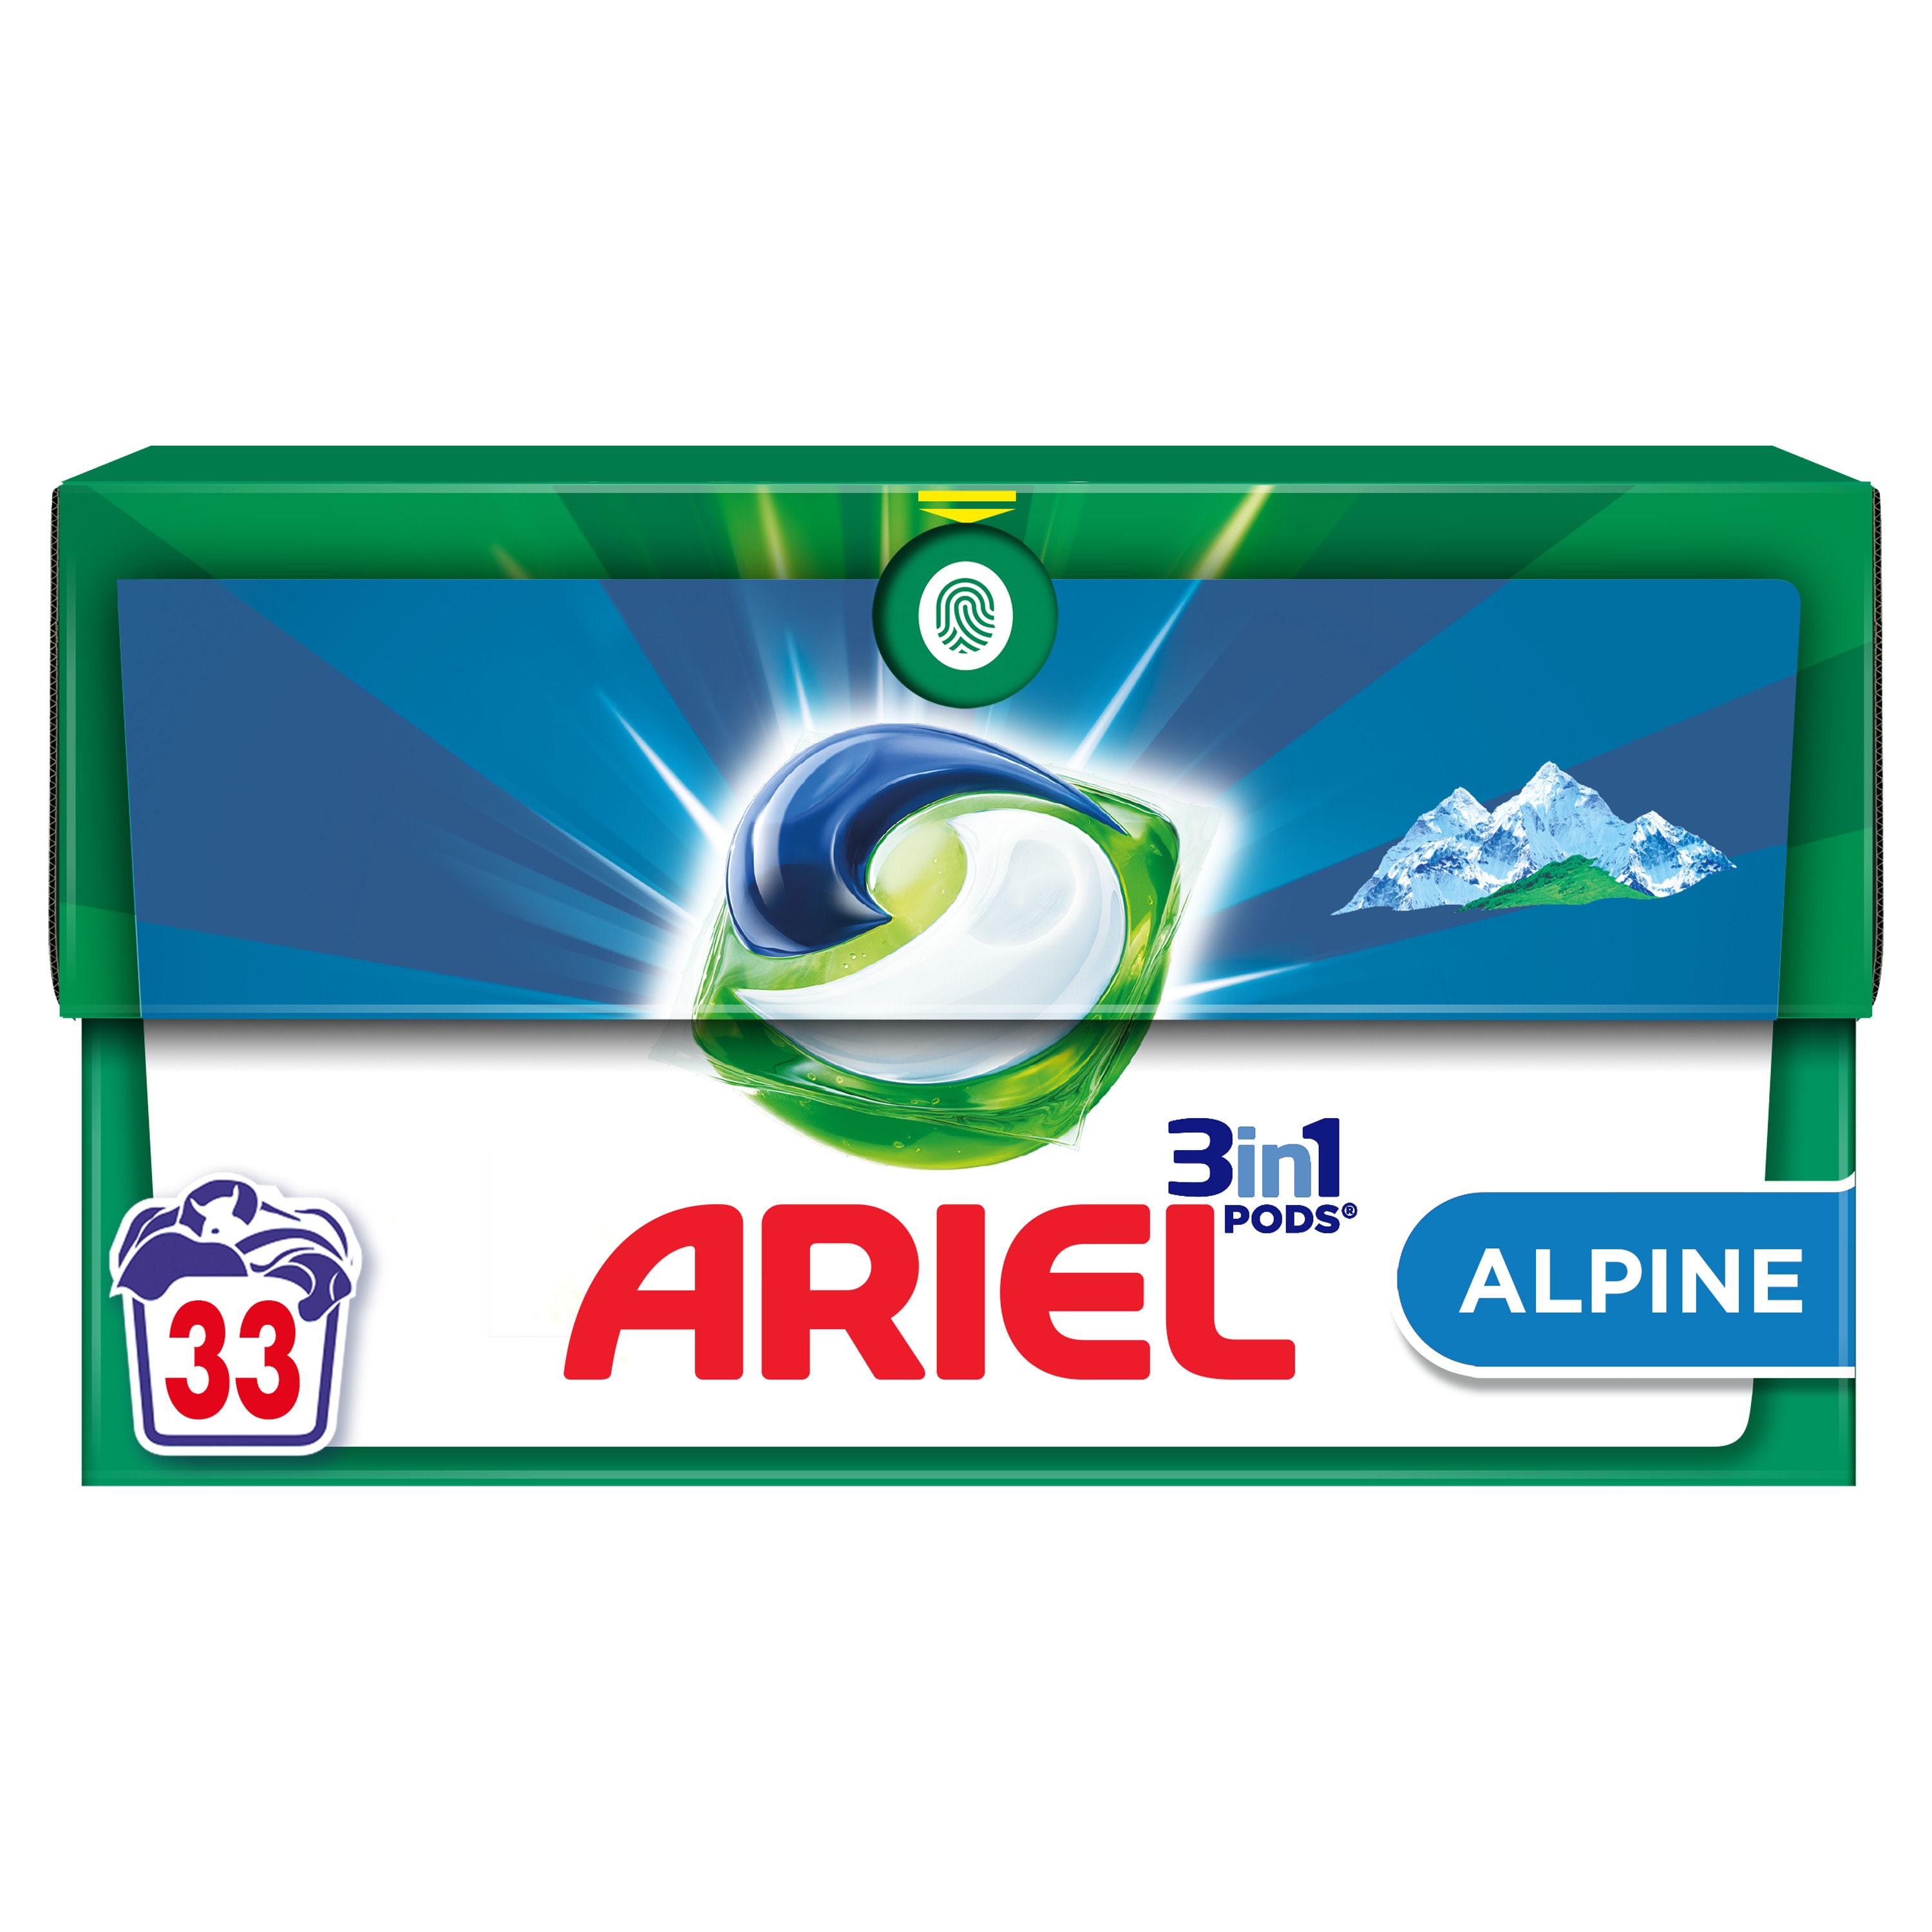 Ariel 3in1 PODS Alpine